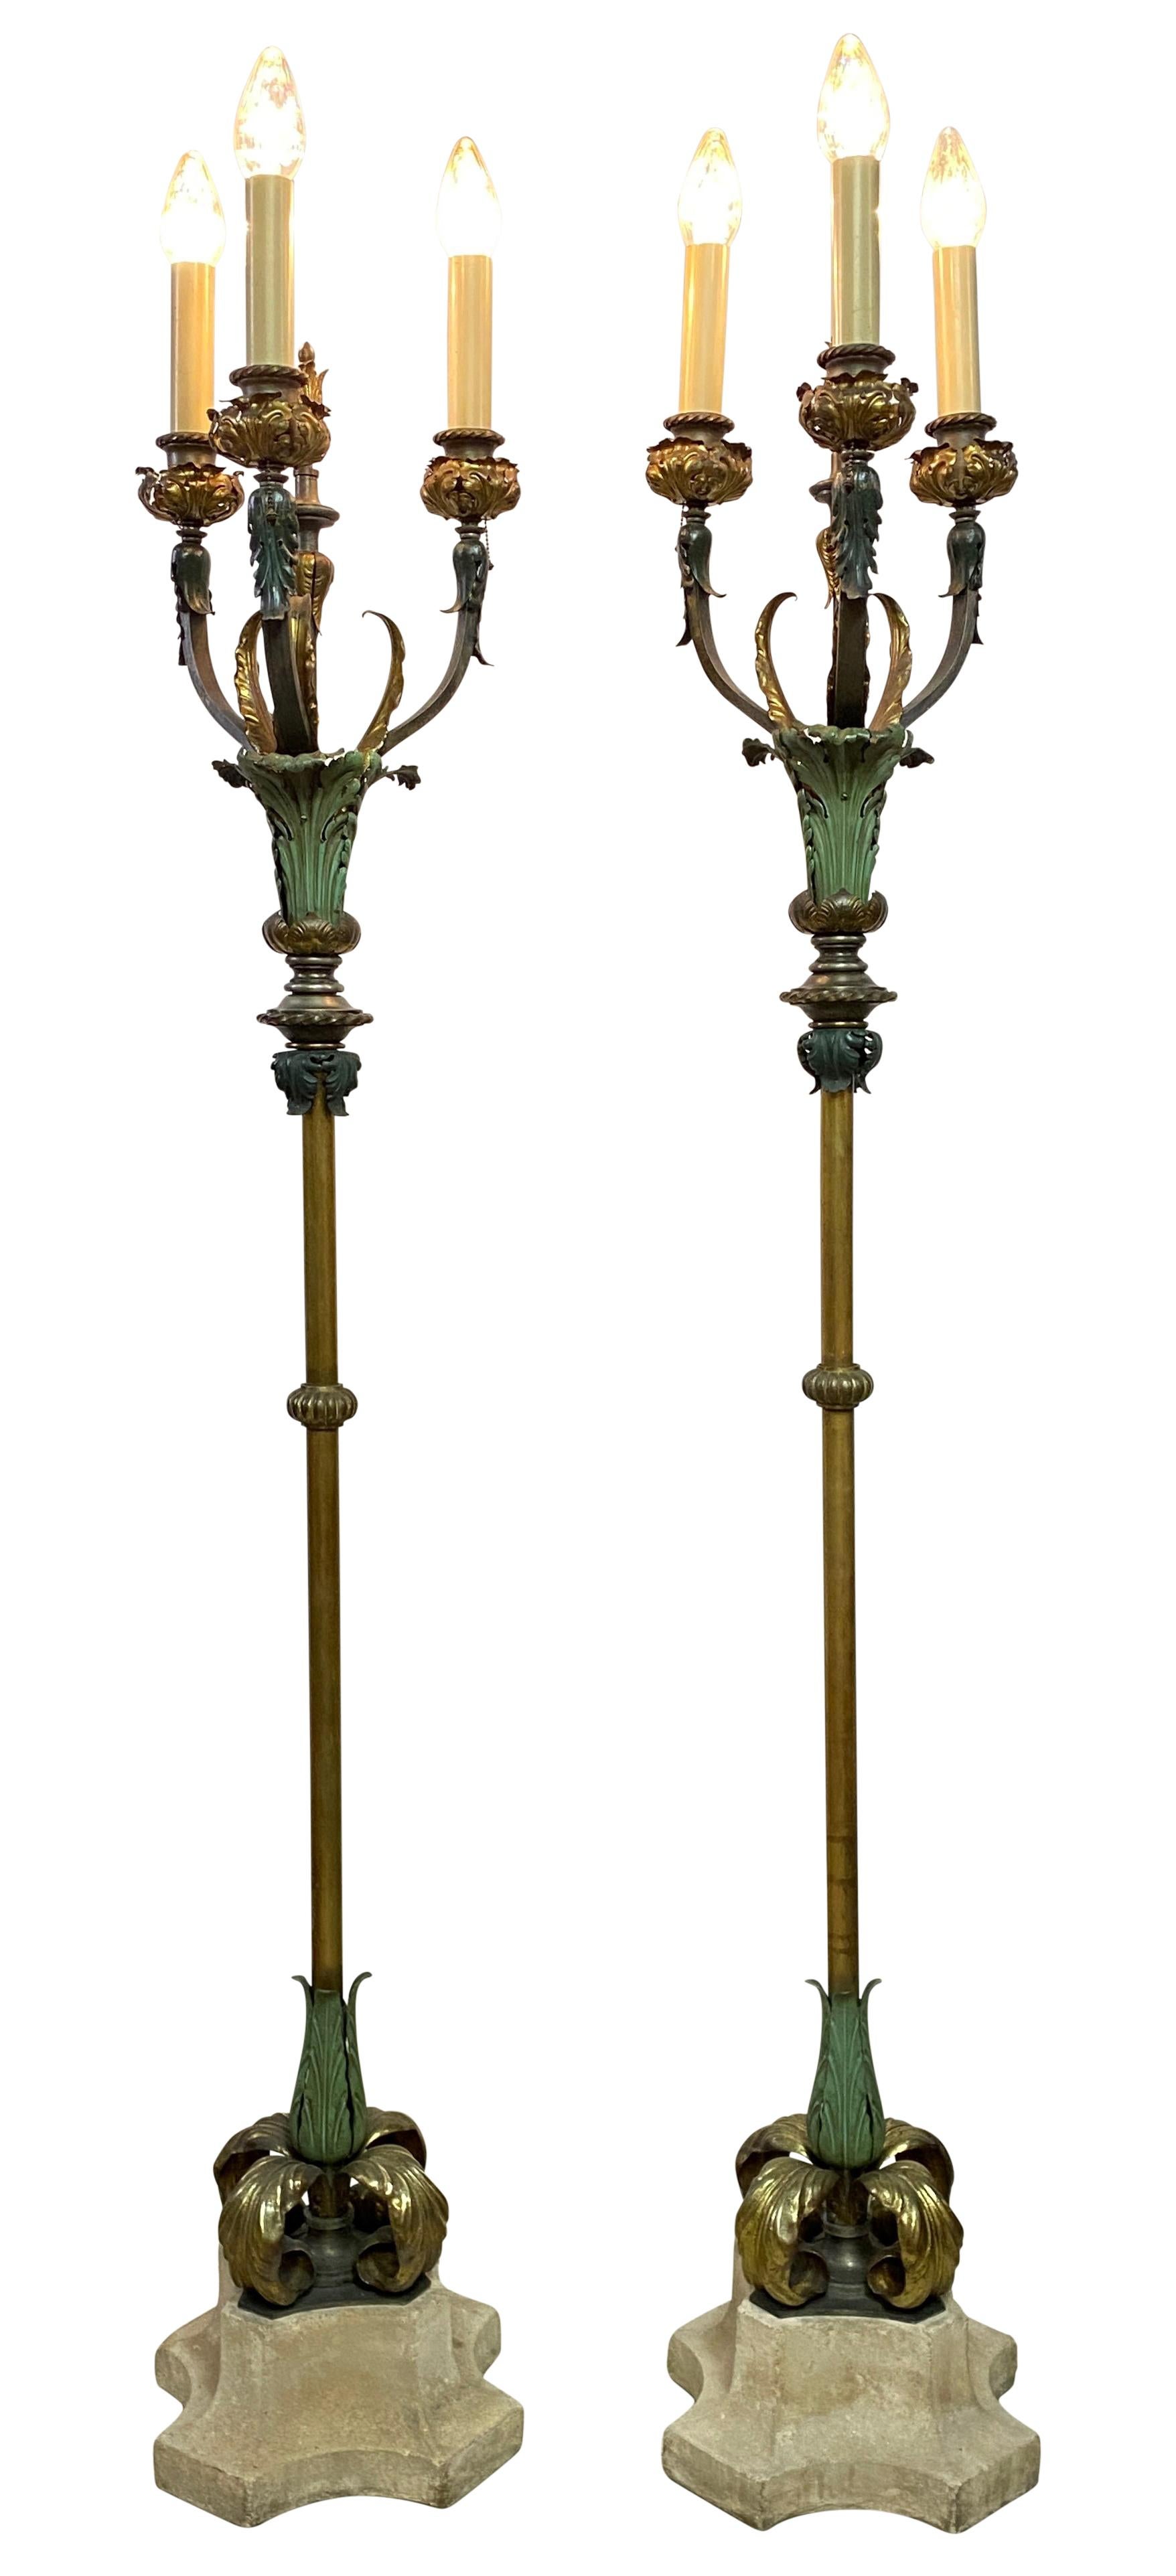 Ein außergewöhnliches Paar Stehlampen im mediterranen Stil des frühen 20. Jahrhunderts aus lackiertem und patiniertem Messing auf Kalksteinsockeln. Kürzlich neu verkabelt, alle Steckdosen haben Kettenzüge, in ausgezeichnetem antiken